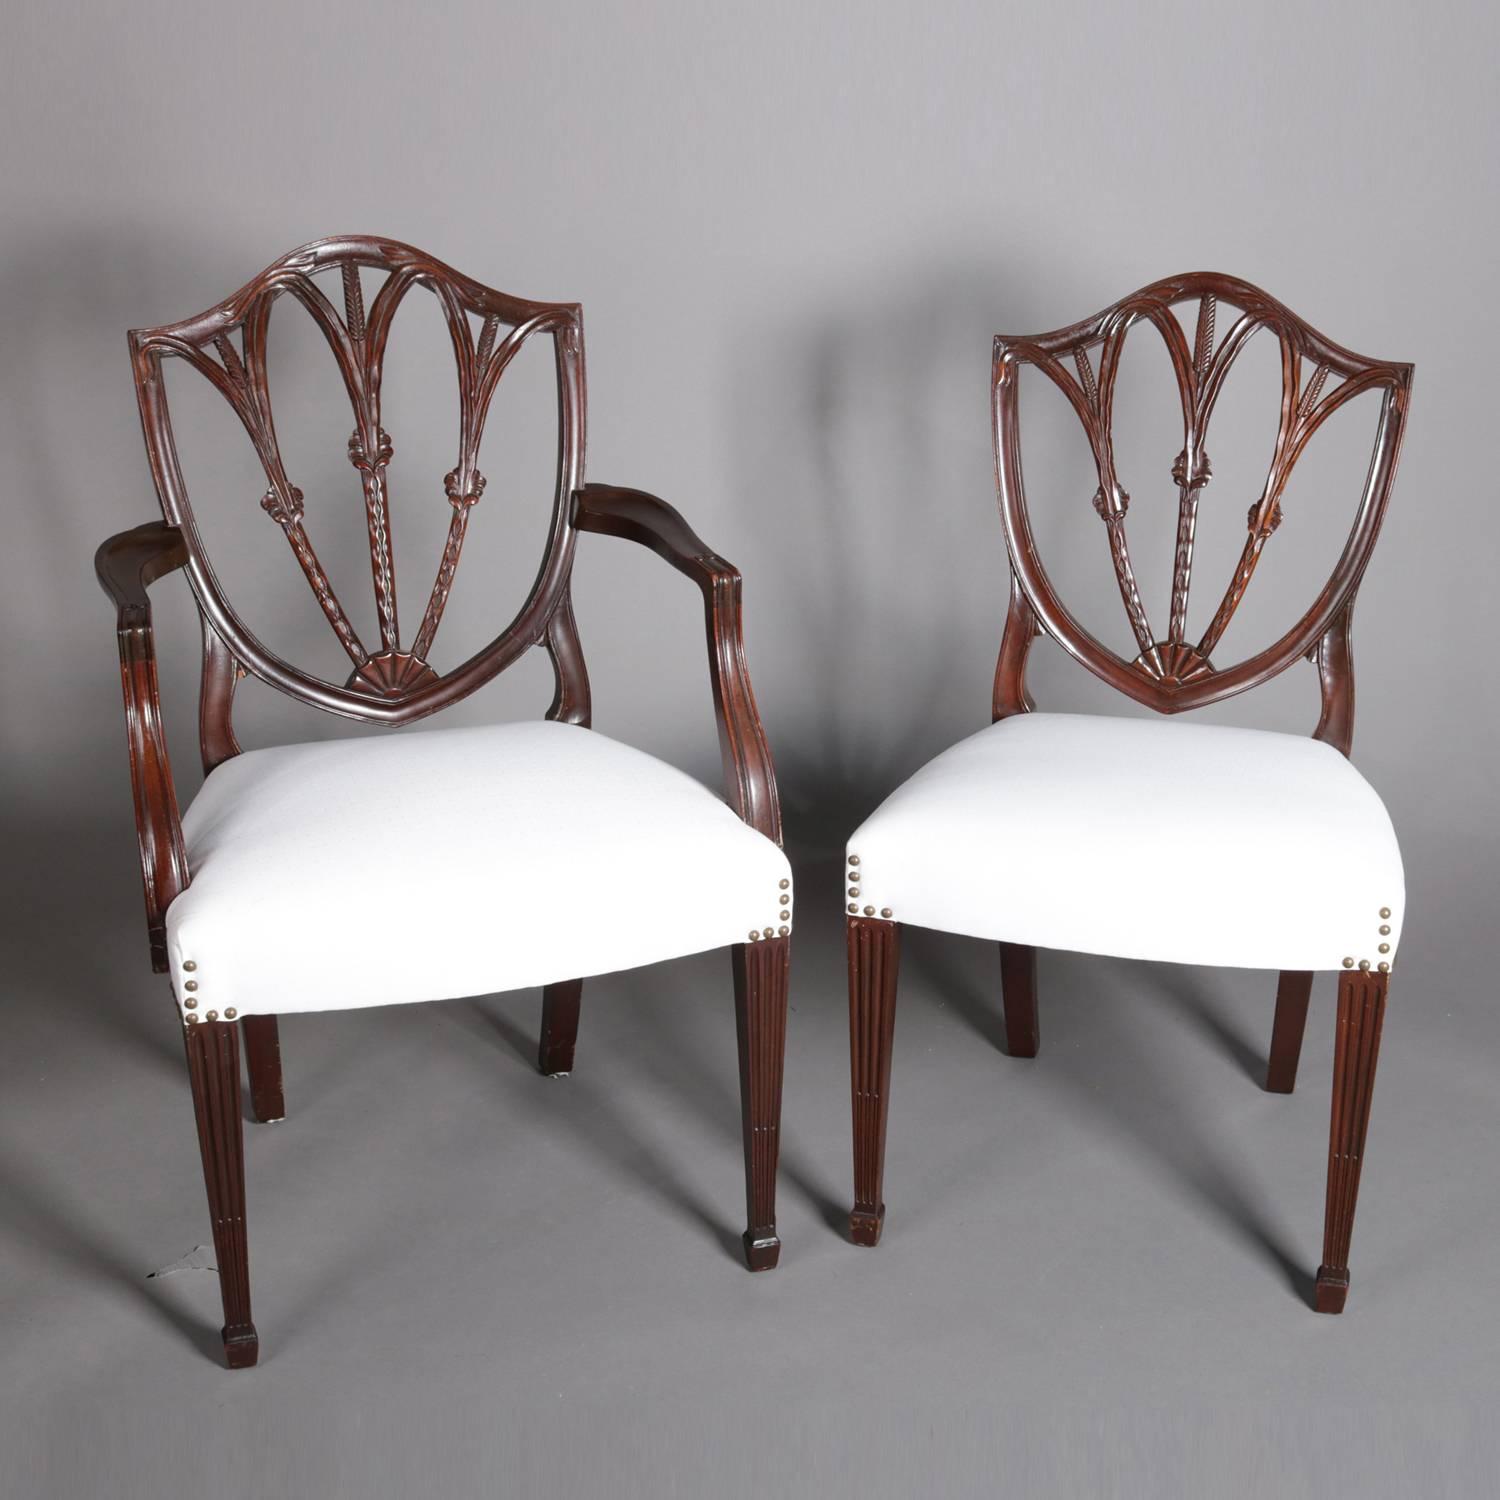 hepplewhite style chairs